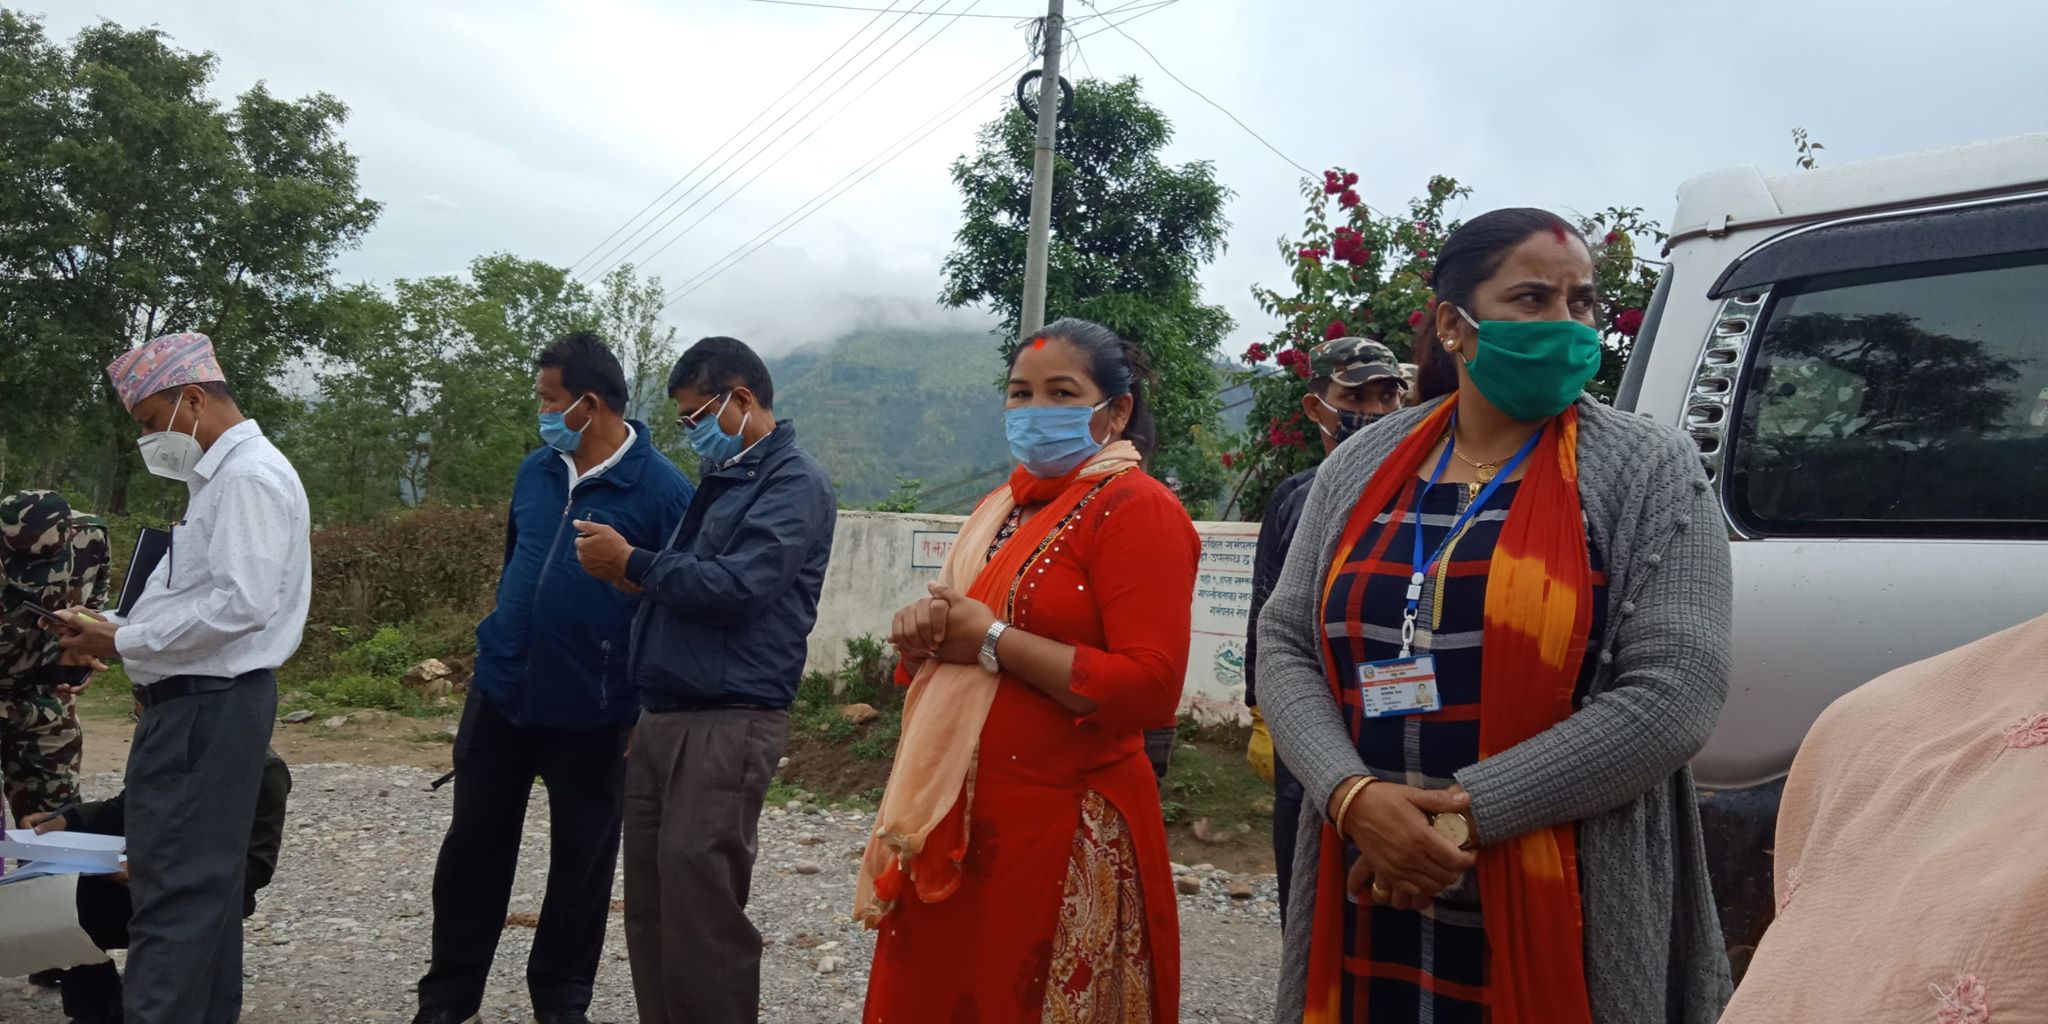 रामपुरमा थप १० जनाको आरडीटी बिधिबाट काेराेना भाइरस परीक्षण